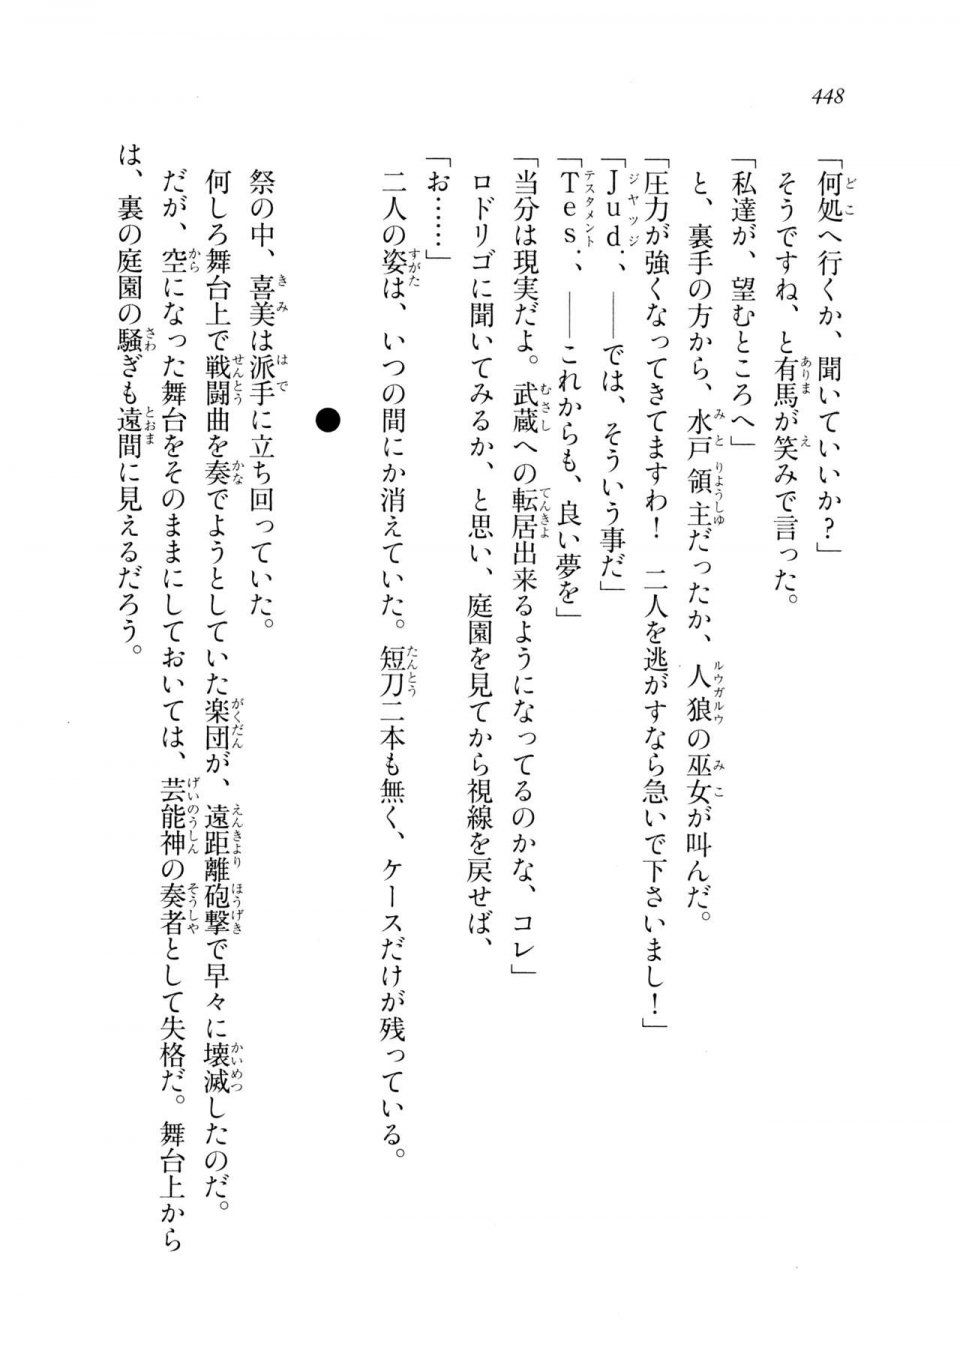 Kyoukai Senjou no Horizon LN Sidestory Vol 2 - Photo #446